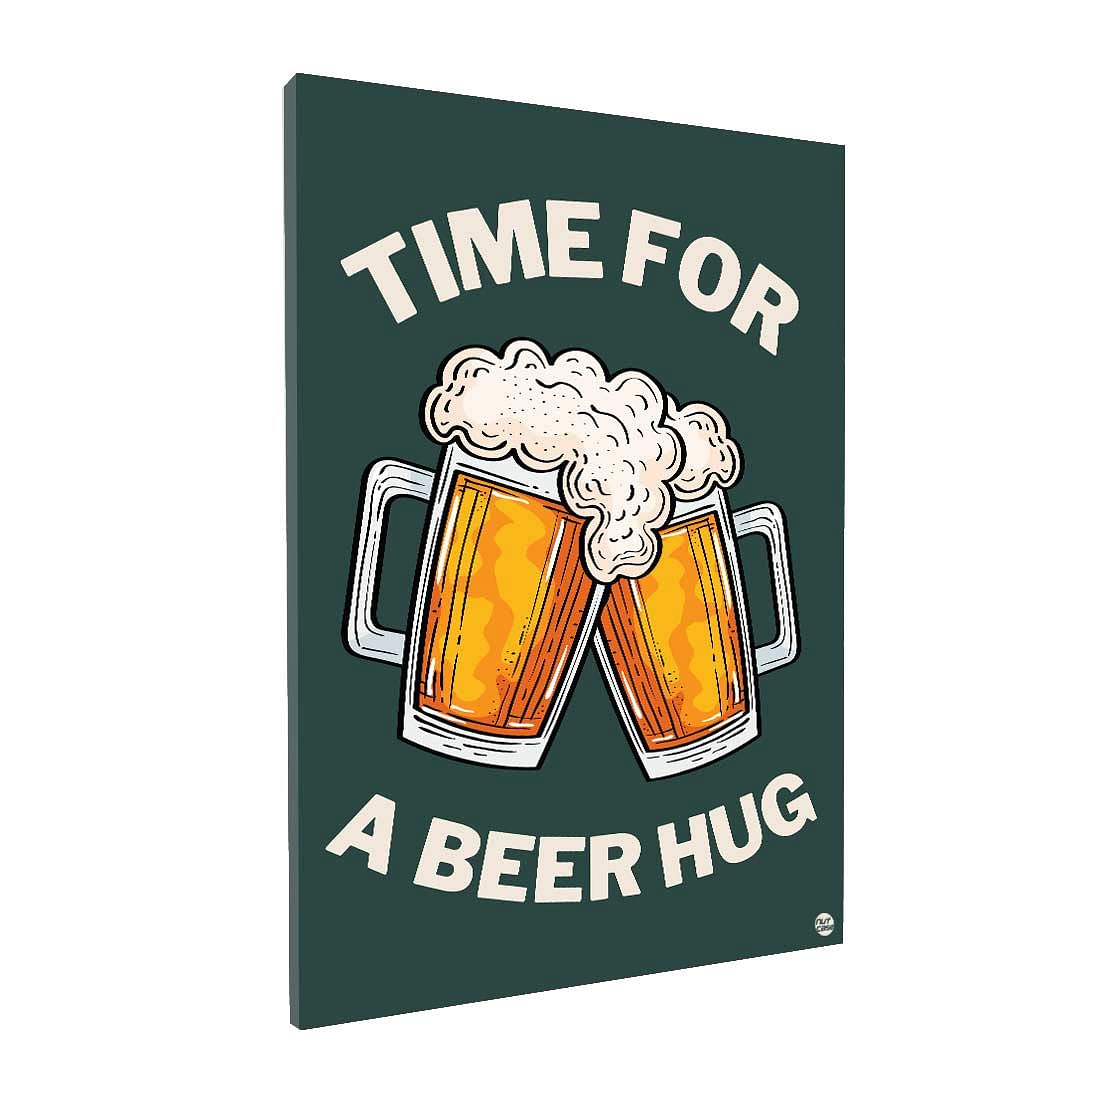 Funny Designer Beer Sign for Home - Time for a Beer Hug Nutcase